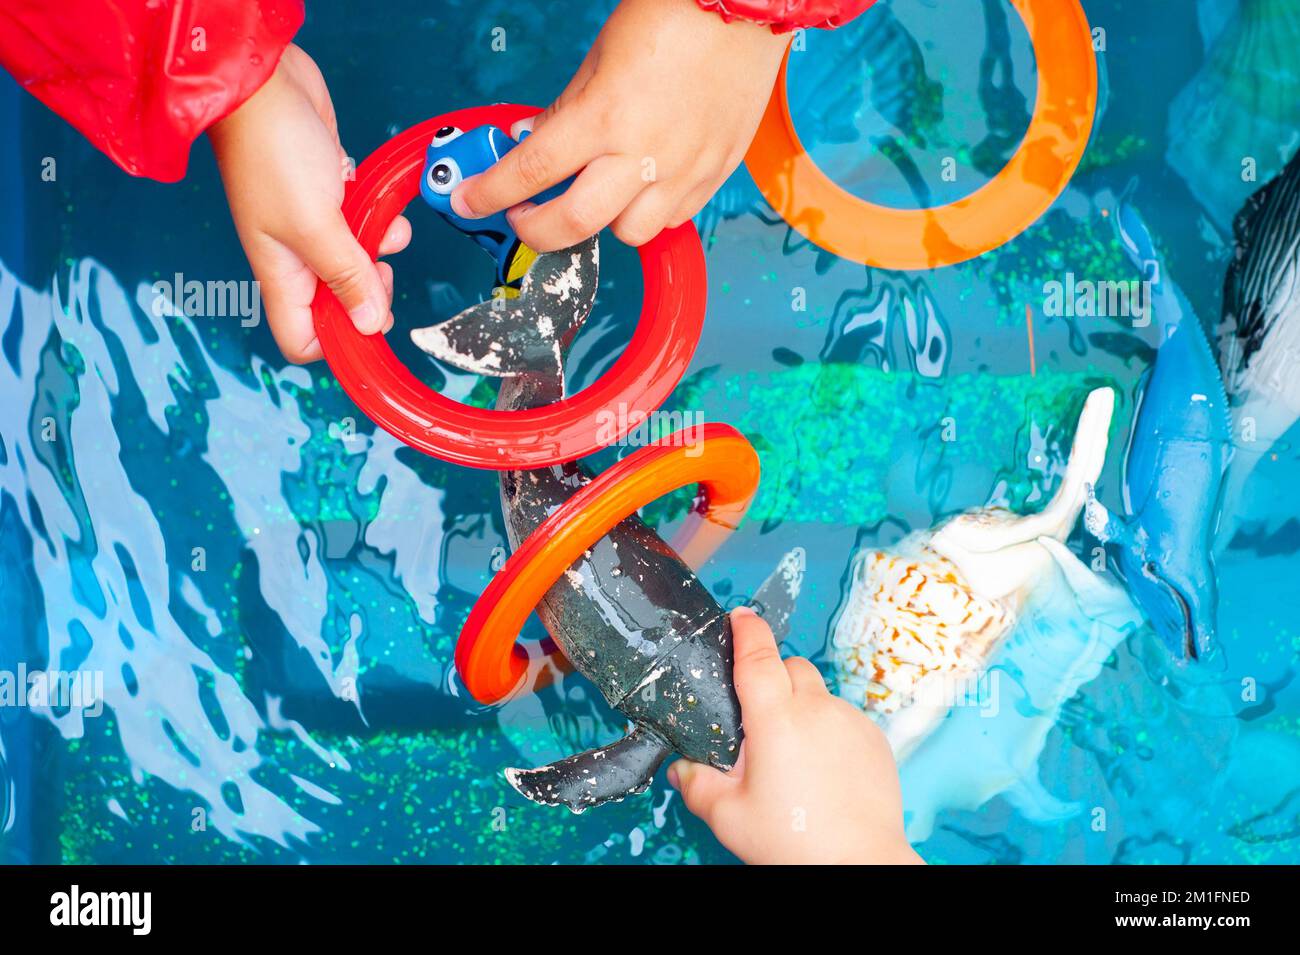 Les jeunes enfants des écoles jouent avec des jouets de poissons et de baleines dans l'eau en montrant seulement les mains Banque D'Images